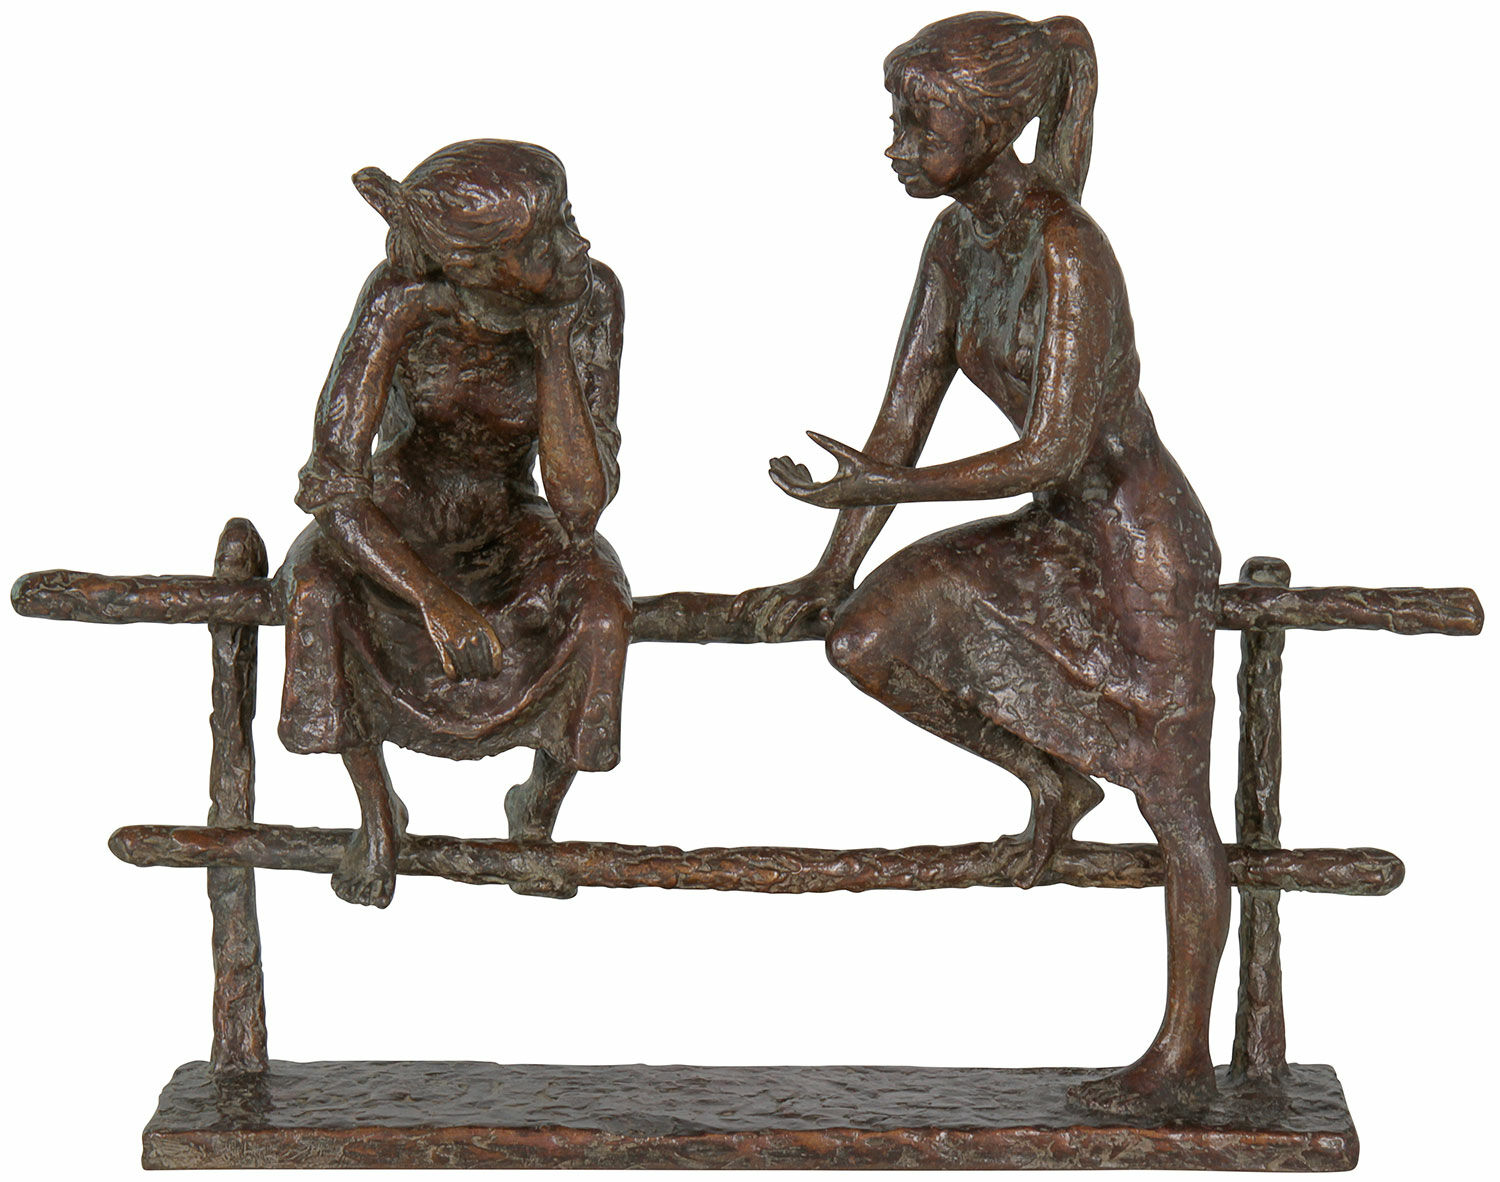 Sculpture "Dialogue", bronze by Jürgen Ebert